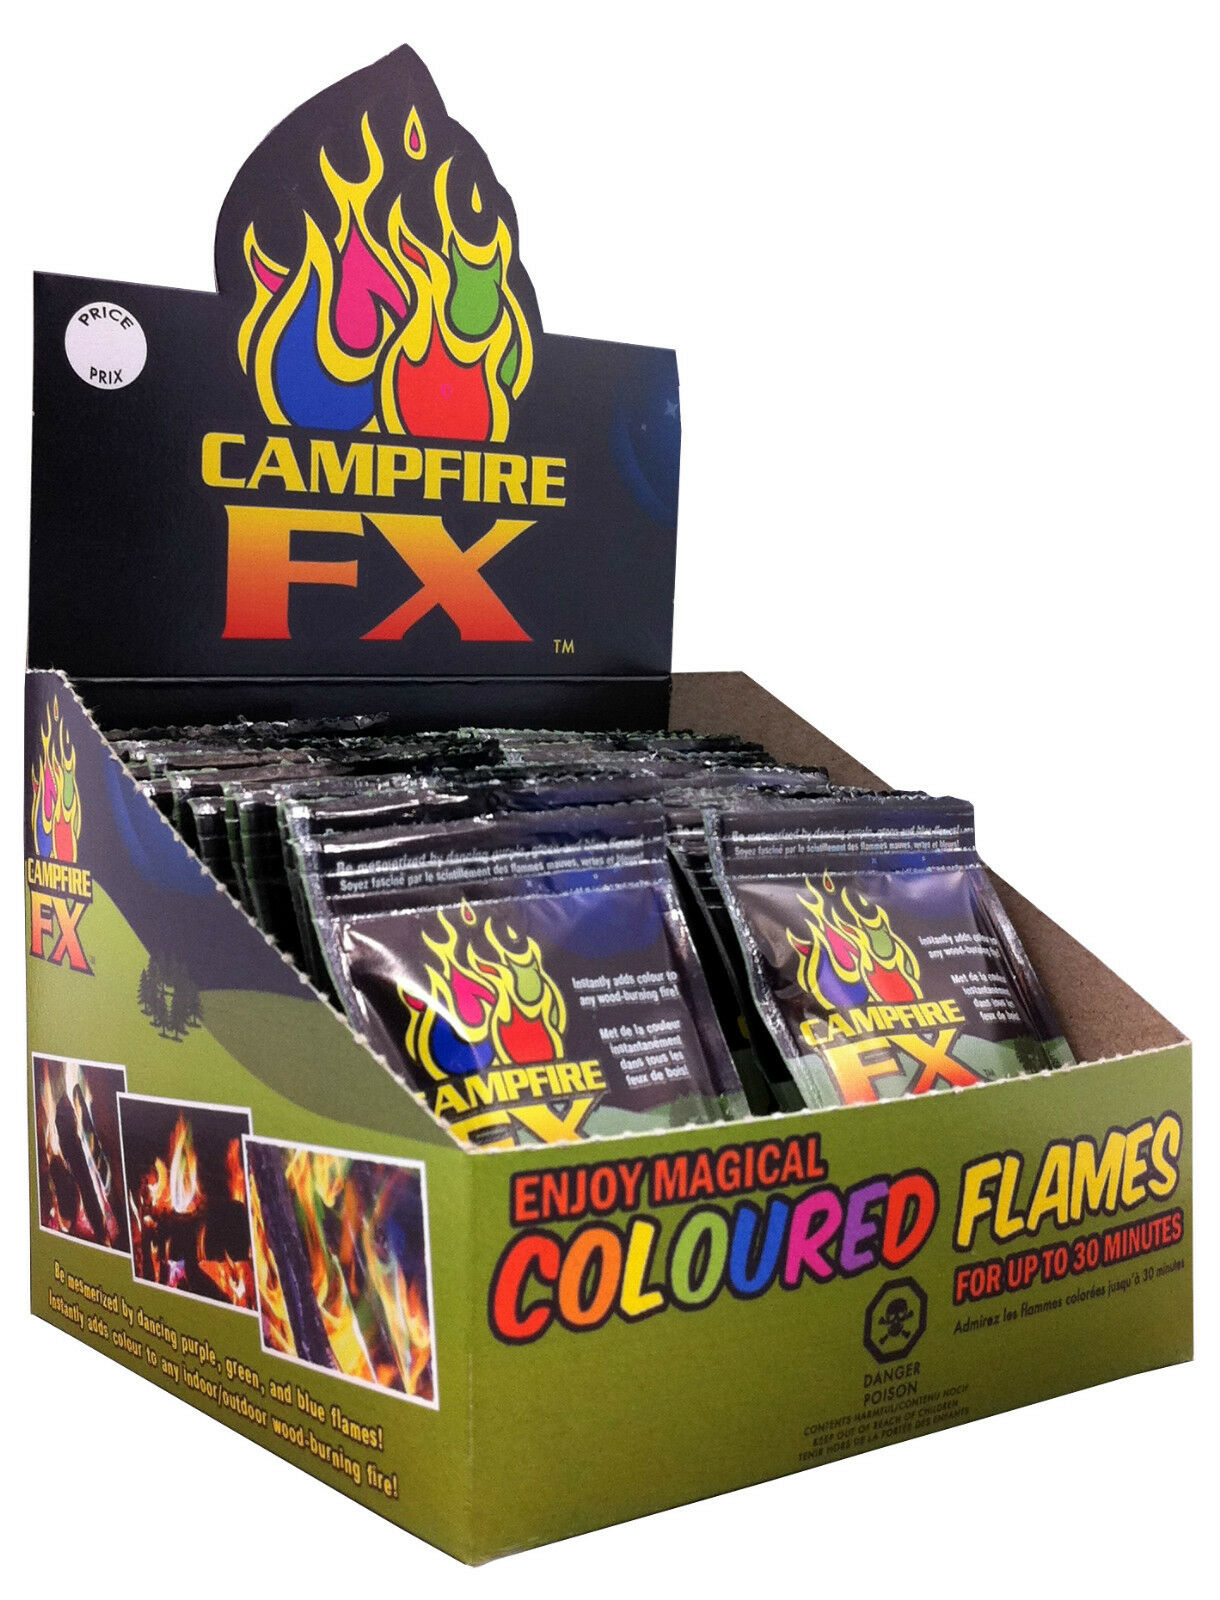 WORLD FAMOUS - CAMPFIRE FX COLOUR FLAMES